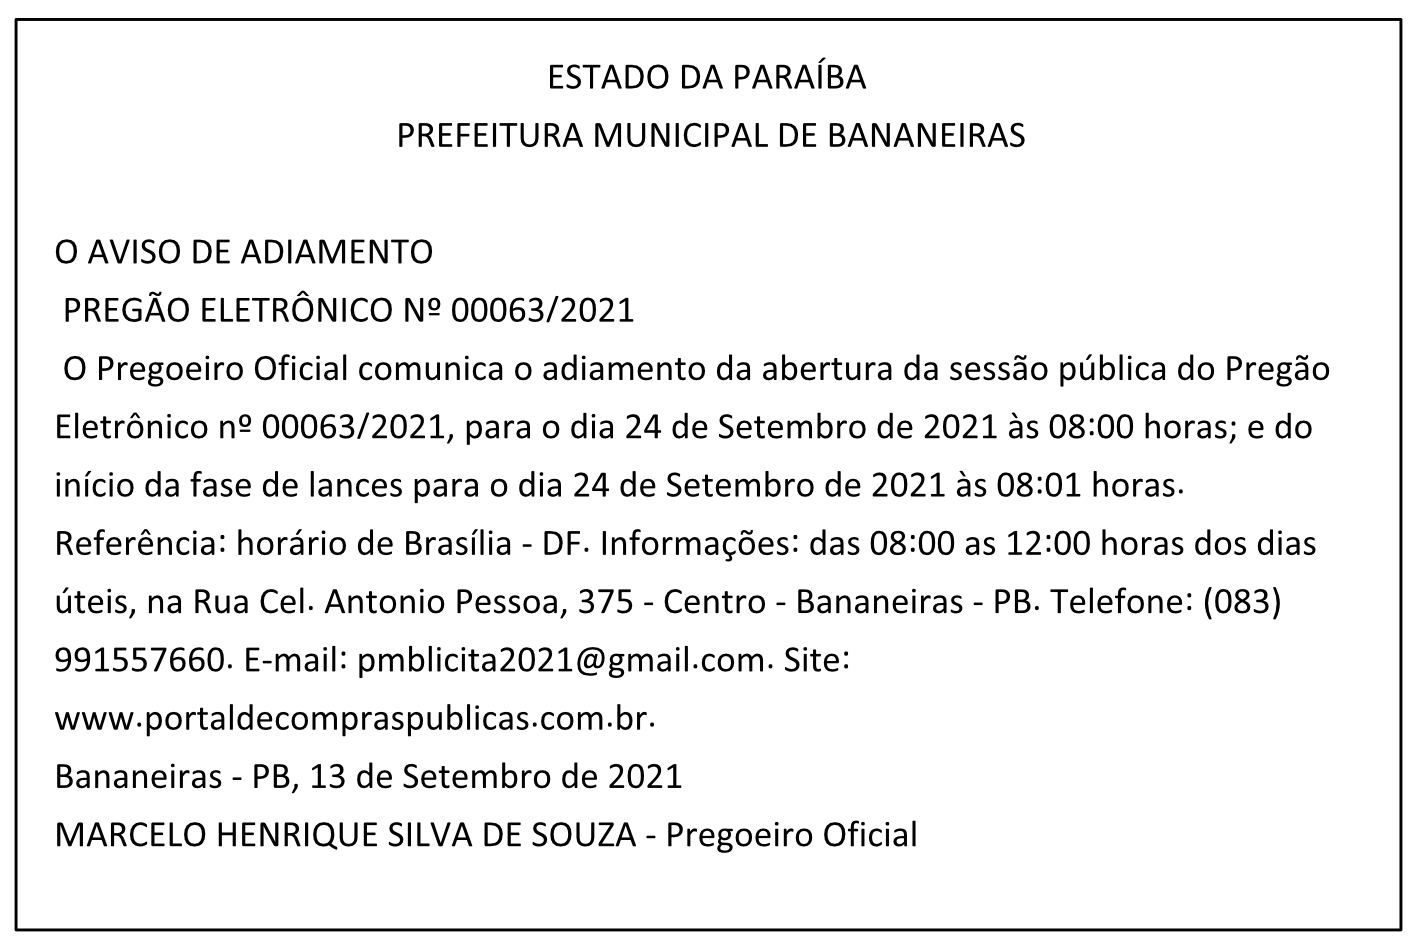 PREFEITURA MUNICIPAL DE BANANEIRAS – AVISO DE ADIAMENTO – PREGÃO ELETRÔNICO Nº 00063/2021